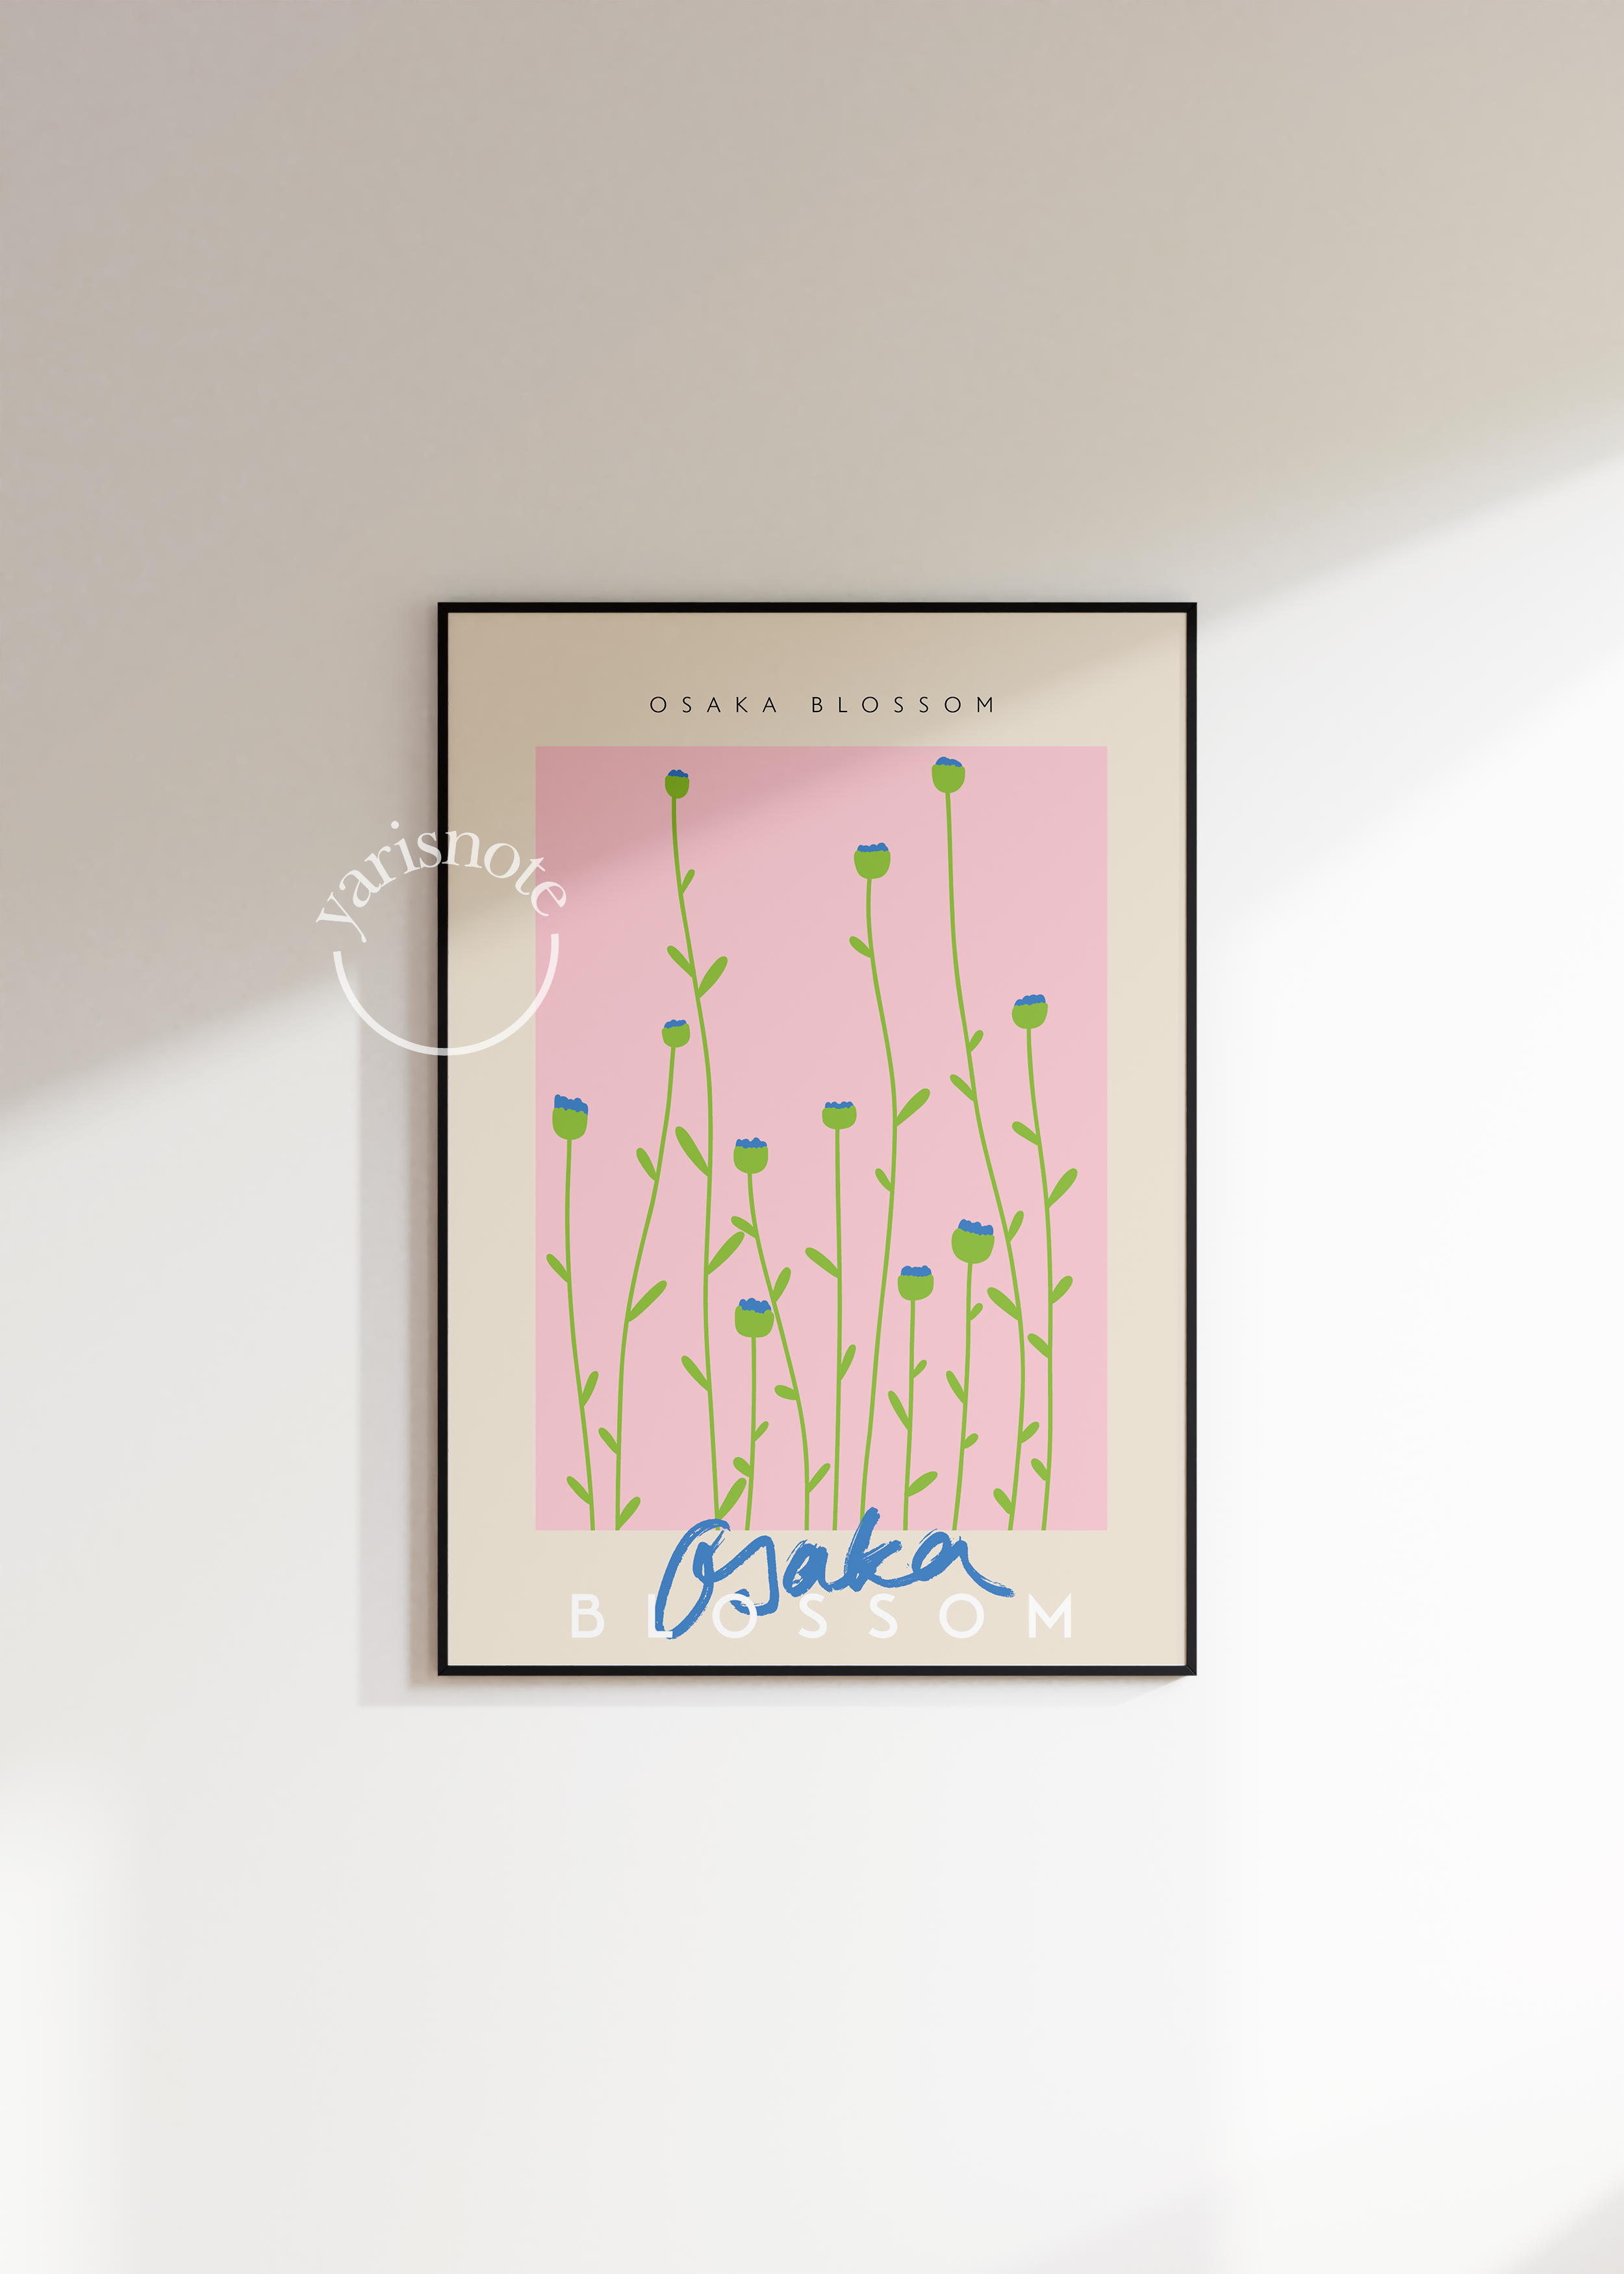 Osaka Blossom Çerçevesiz Poster